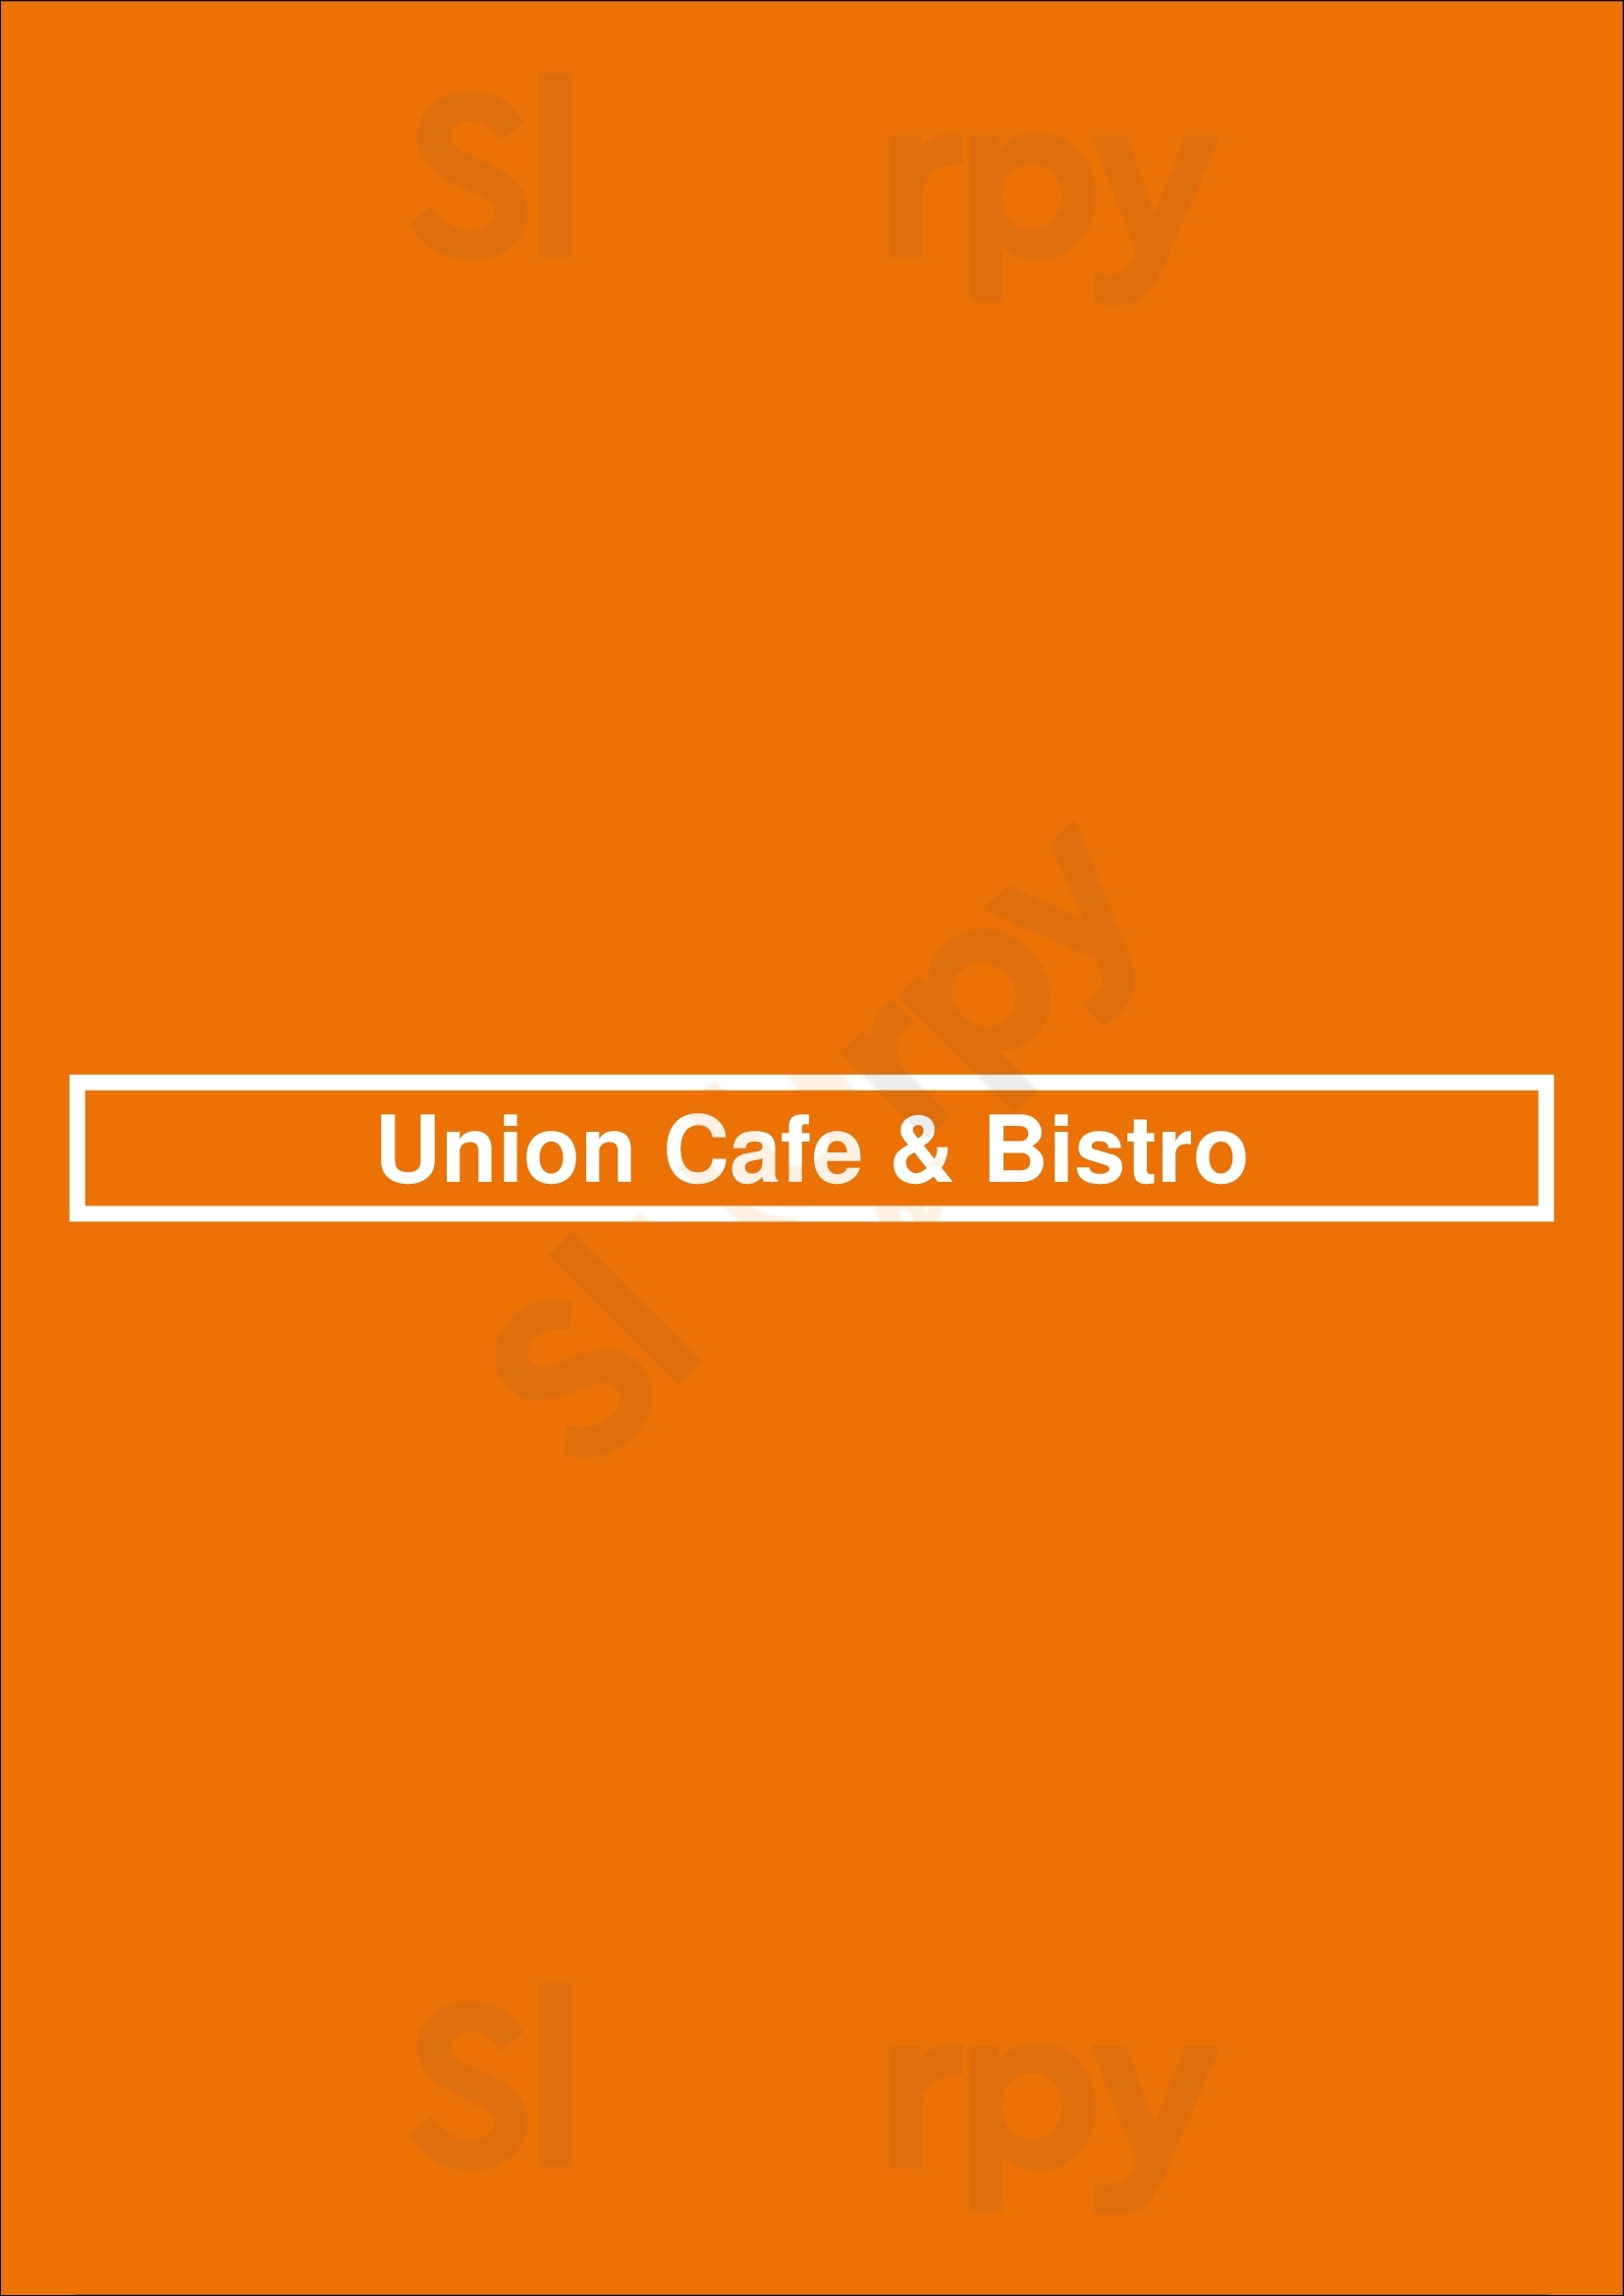 Union Cafe & Bistro Aberdeen Menu - 1